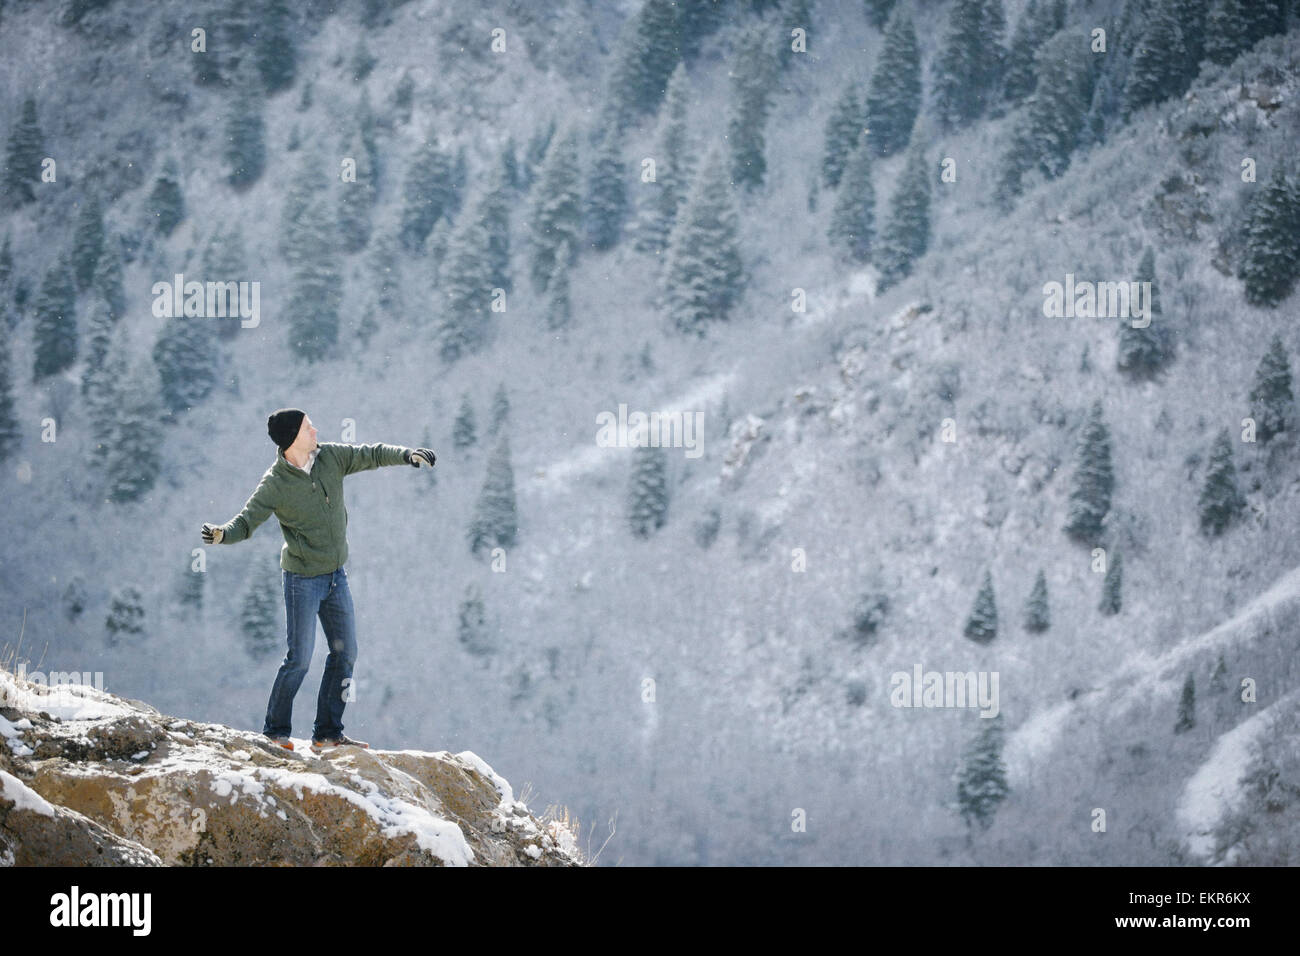 Un homme sur un affleurement rocheux dans les montagnes. Banque D'Images